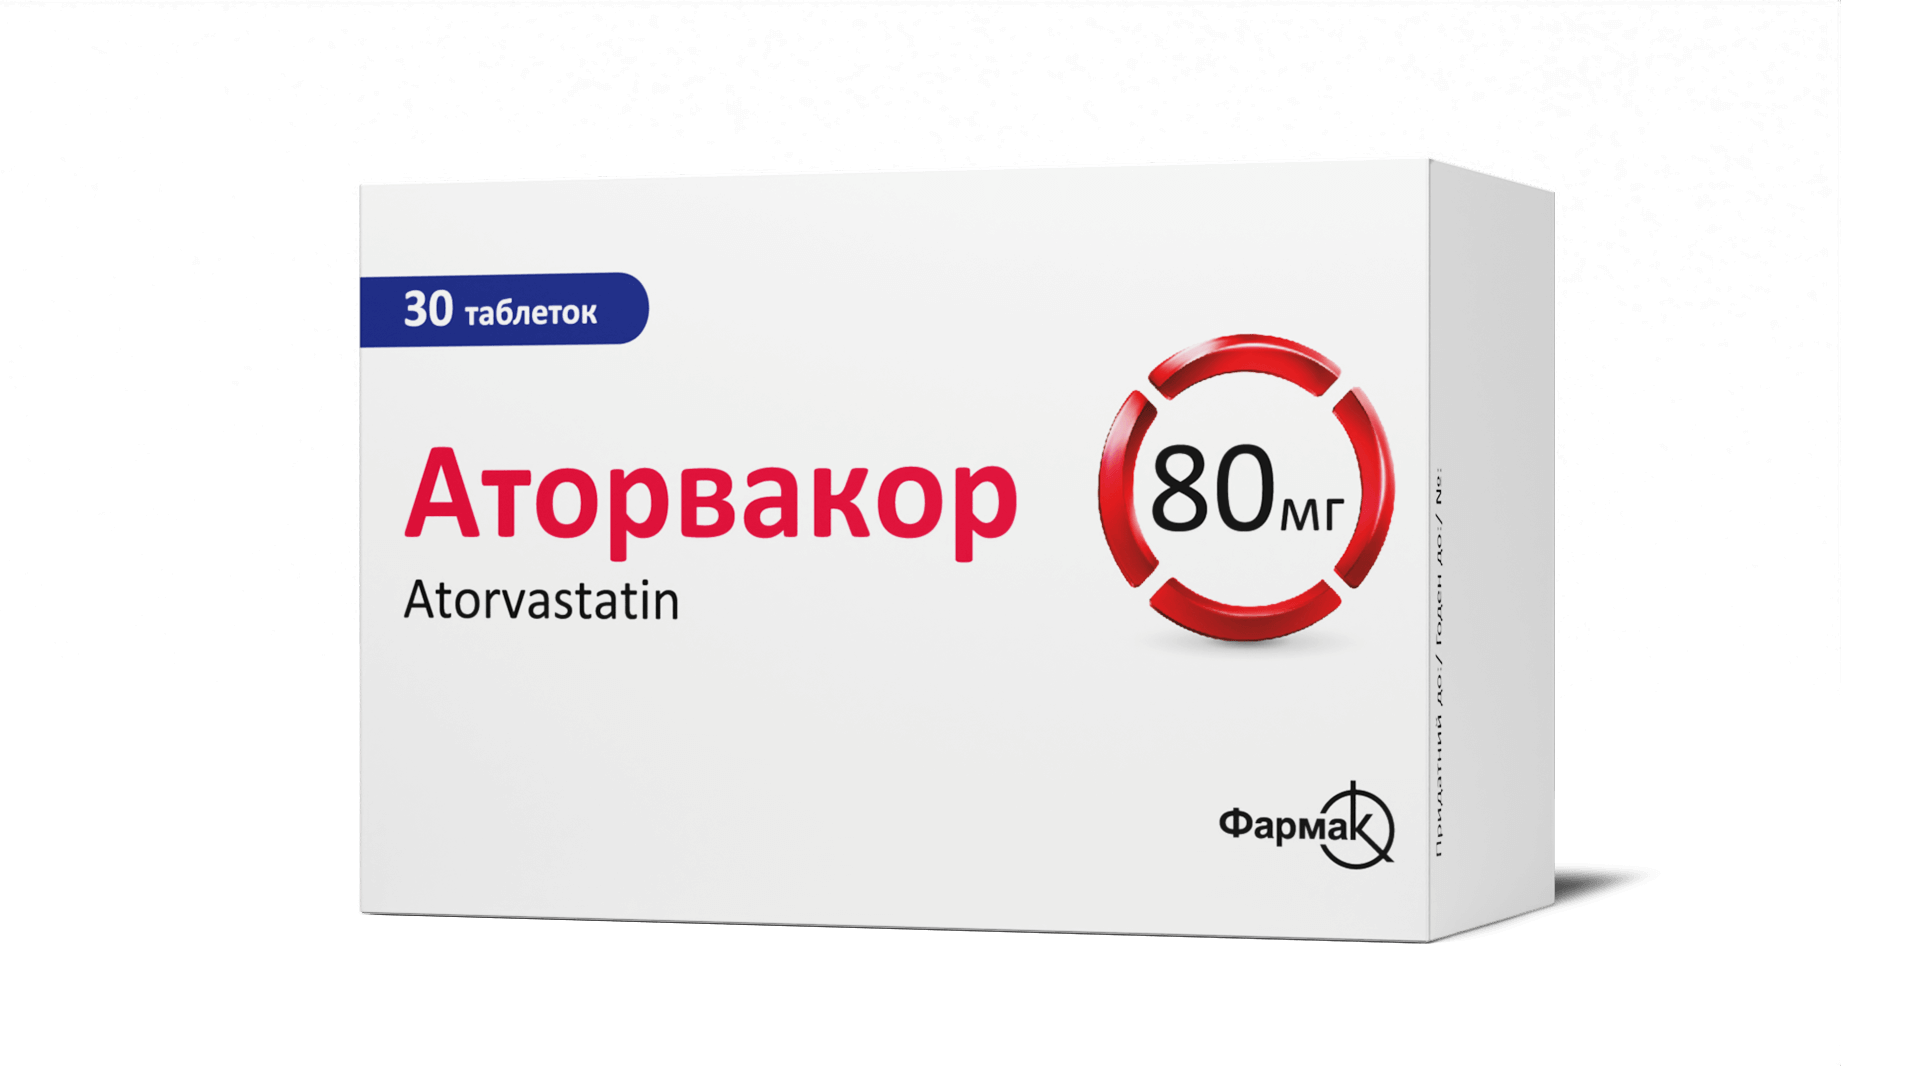 Аторвакор® 40 мг і 80 мг (6)